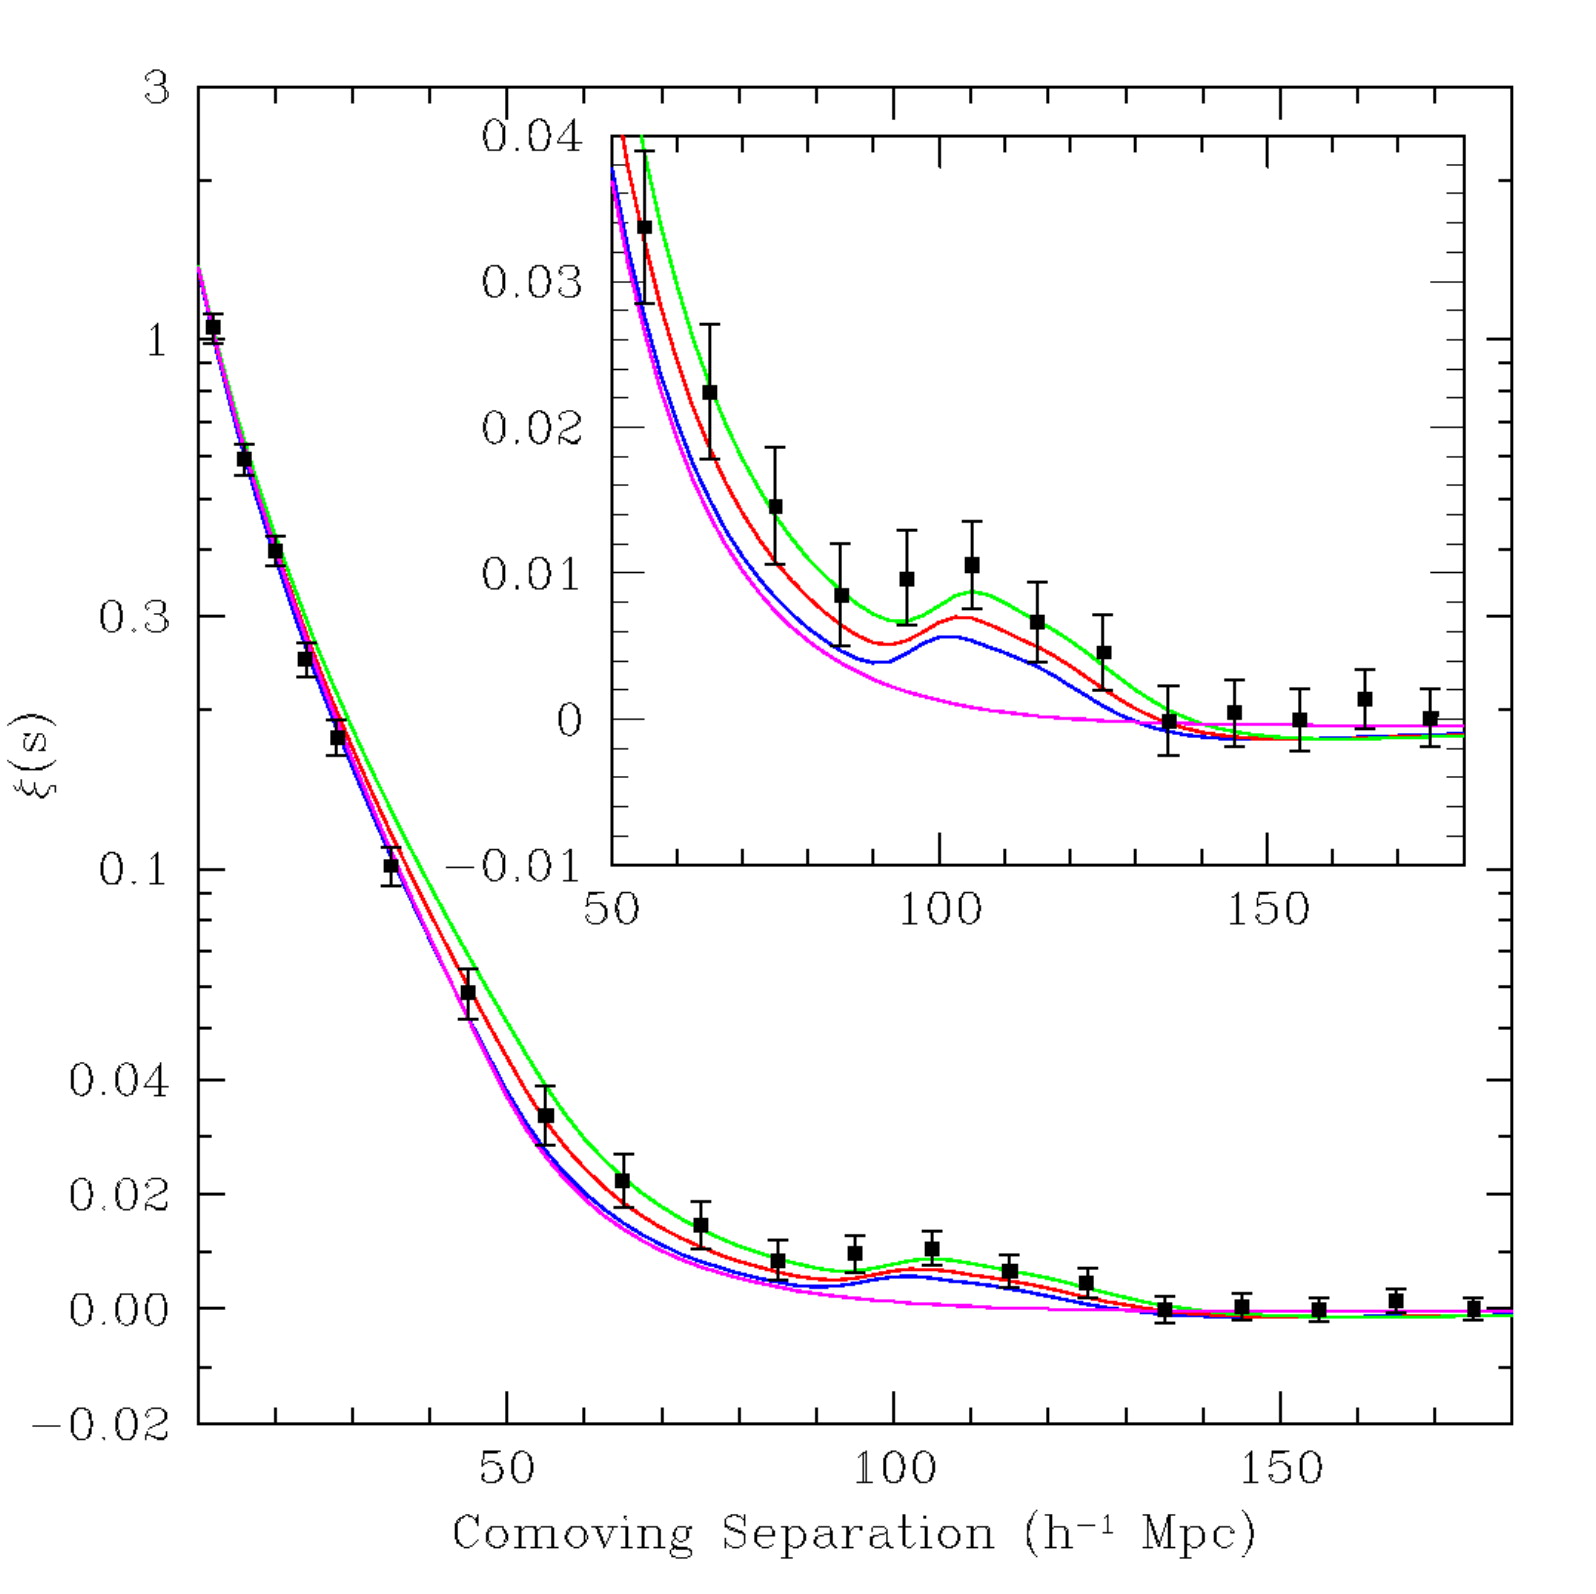 [銀河](http://akari.c.u-tokyo.ac.jp/~doi/Astronomy/galaxy_evolution.html#/sdss)の"二体相関関数"。多数の銀河の典型的な距離間隔を示す。横軸およそ100[$\mathrm{h}^{-1}~\mathrm{Mpc}]の所に見られる山が、バリオン音響振動の結果出来たものである。ここでhは$100~\mathrm{km~s^{-1}Mpc^{-1}}$を単位としたハッブル定数であり、現在の推定値は約0.68。([Eisenstein, Zehavi, Hogg, *et al.* 2005, *ApJ*, **633**, 560](http://iopscience.iop.org/article/10.1086/466512/meta))